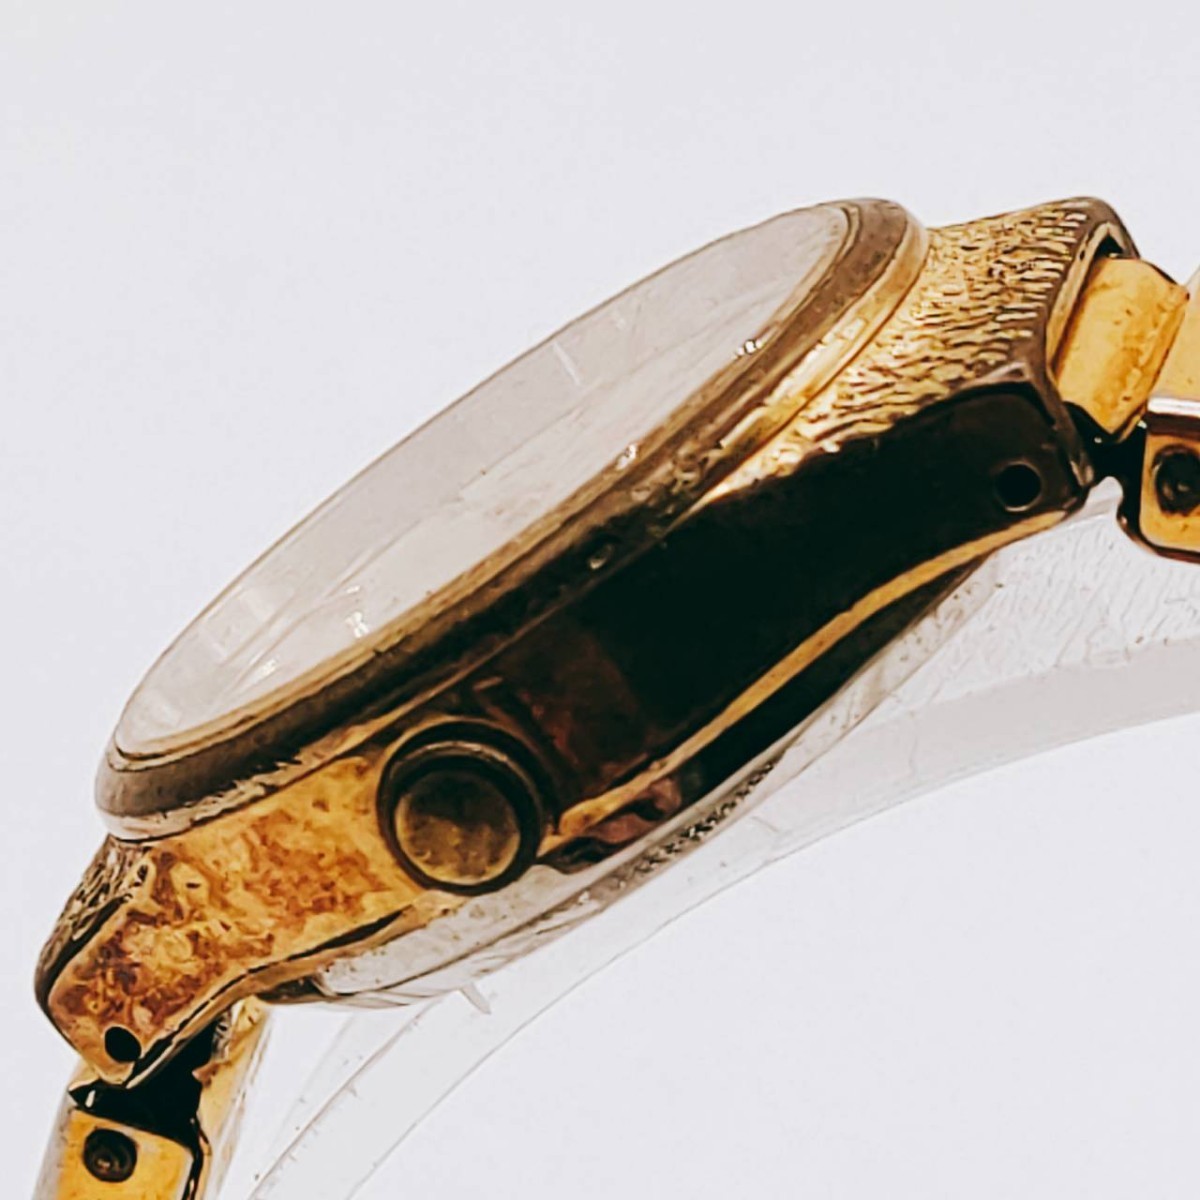 #91 SEIKO セイコー 4301-0010 腕時計 アナログ 2針 金色文字盤 ゴールド色 レディース 時計 とけい トケイ アクセ ヴィンテージ レトロ_画像5